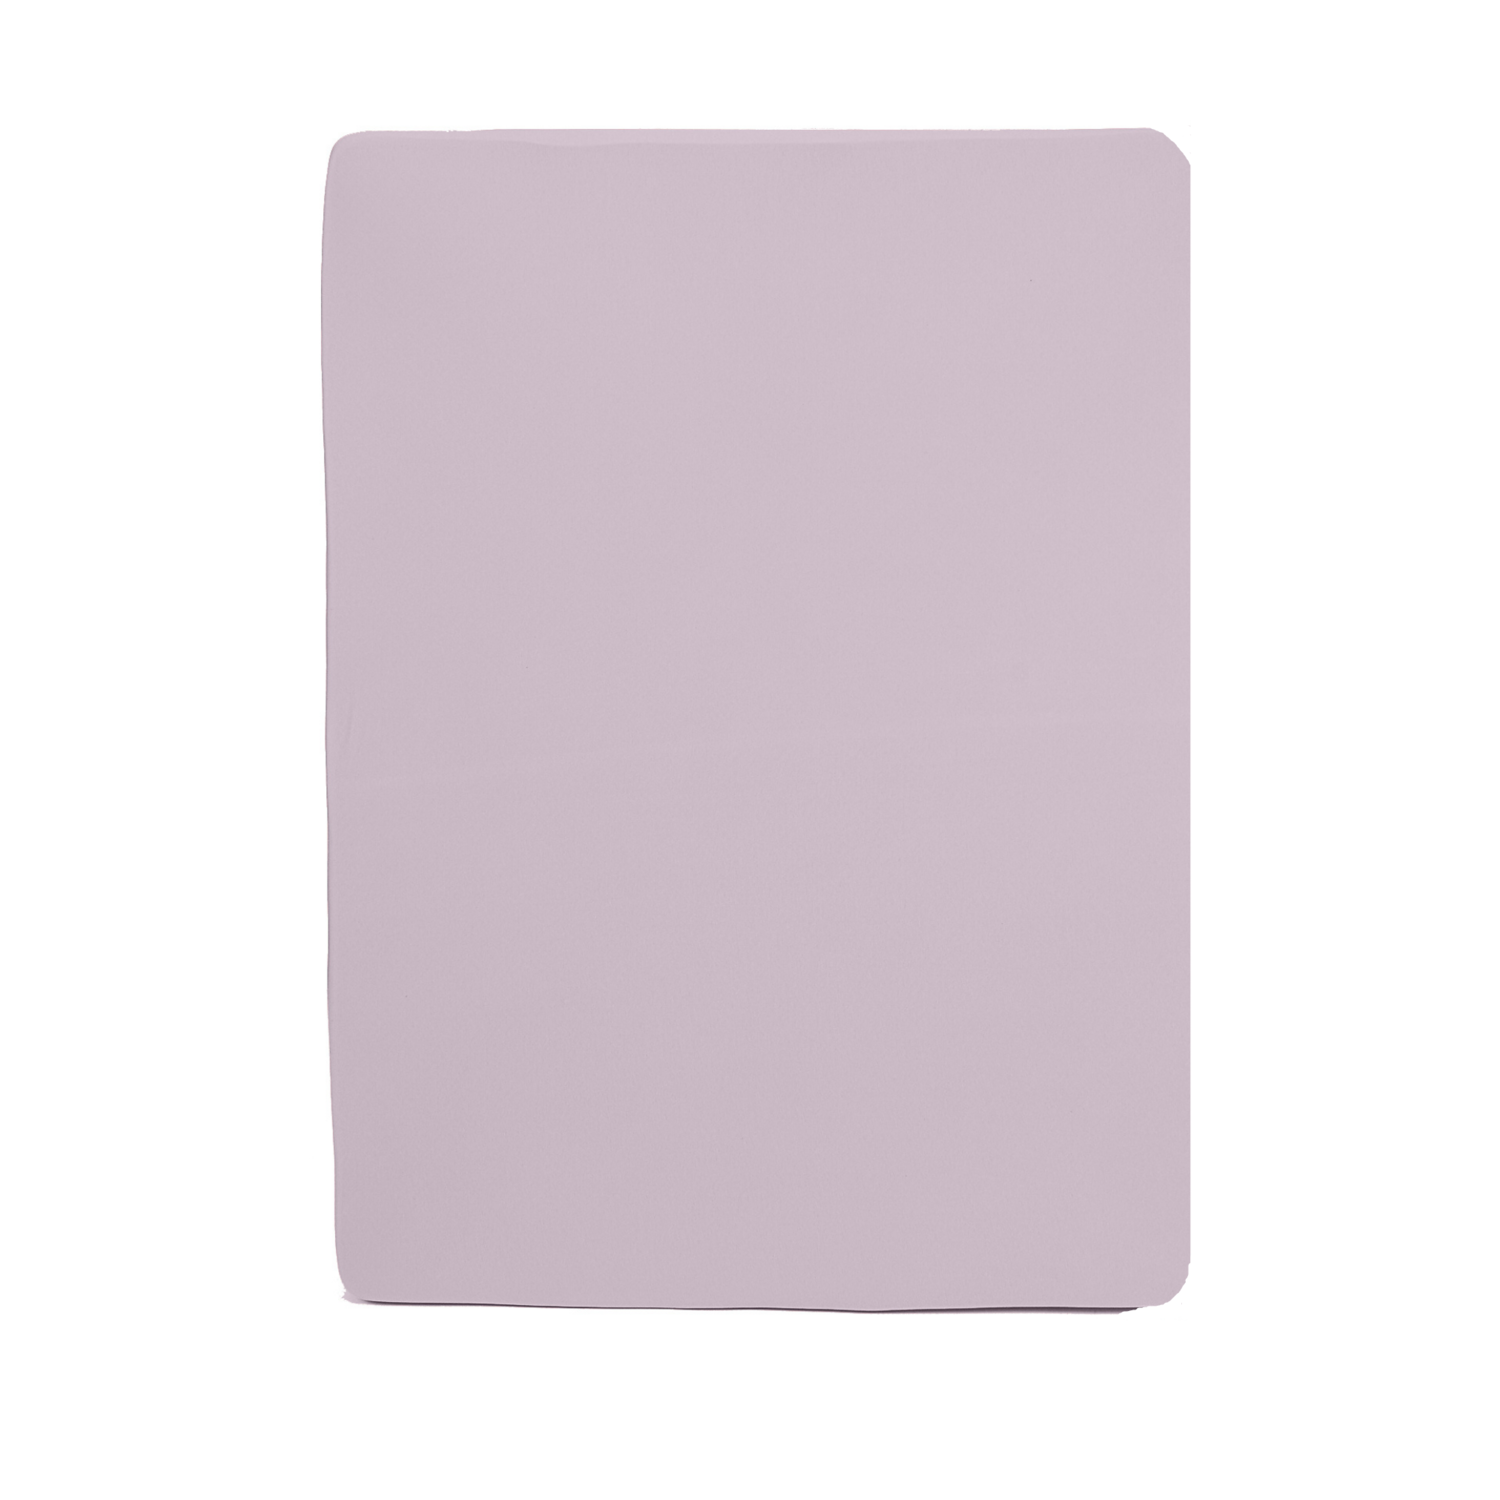 Простыня натяжная Селтекс на резинке 140х200х20 трикотажная розовый - фото 1